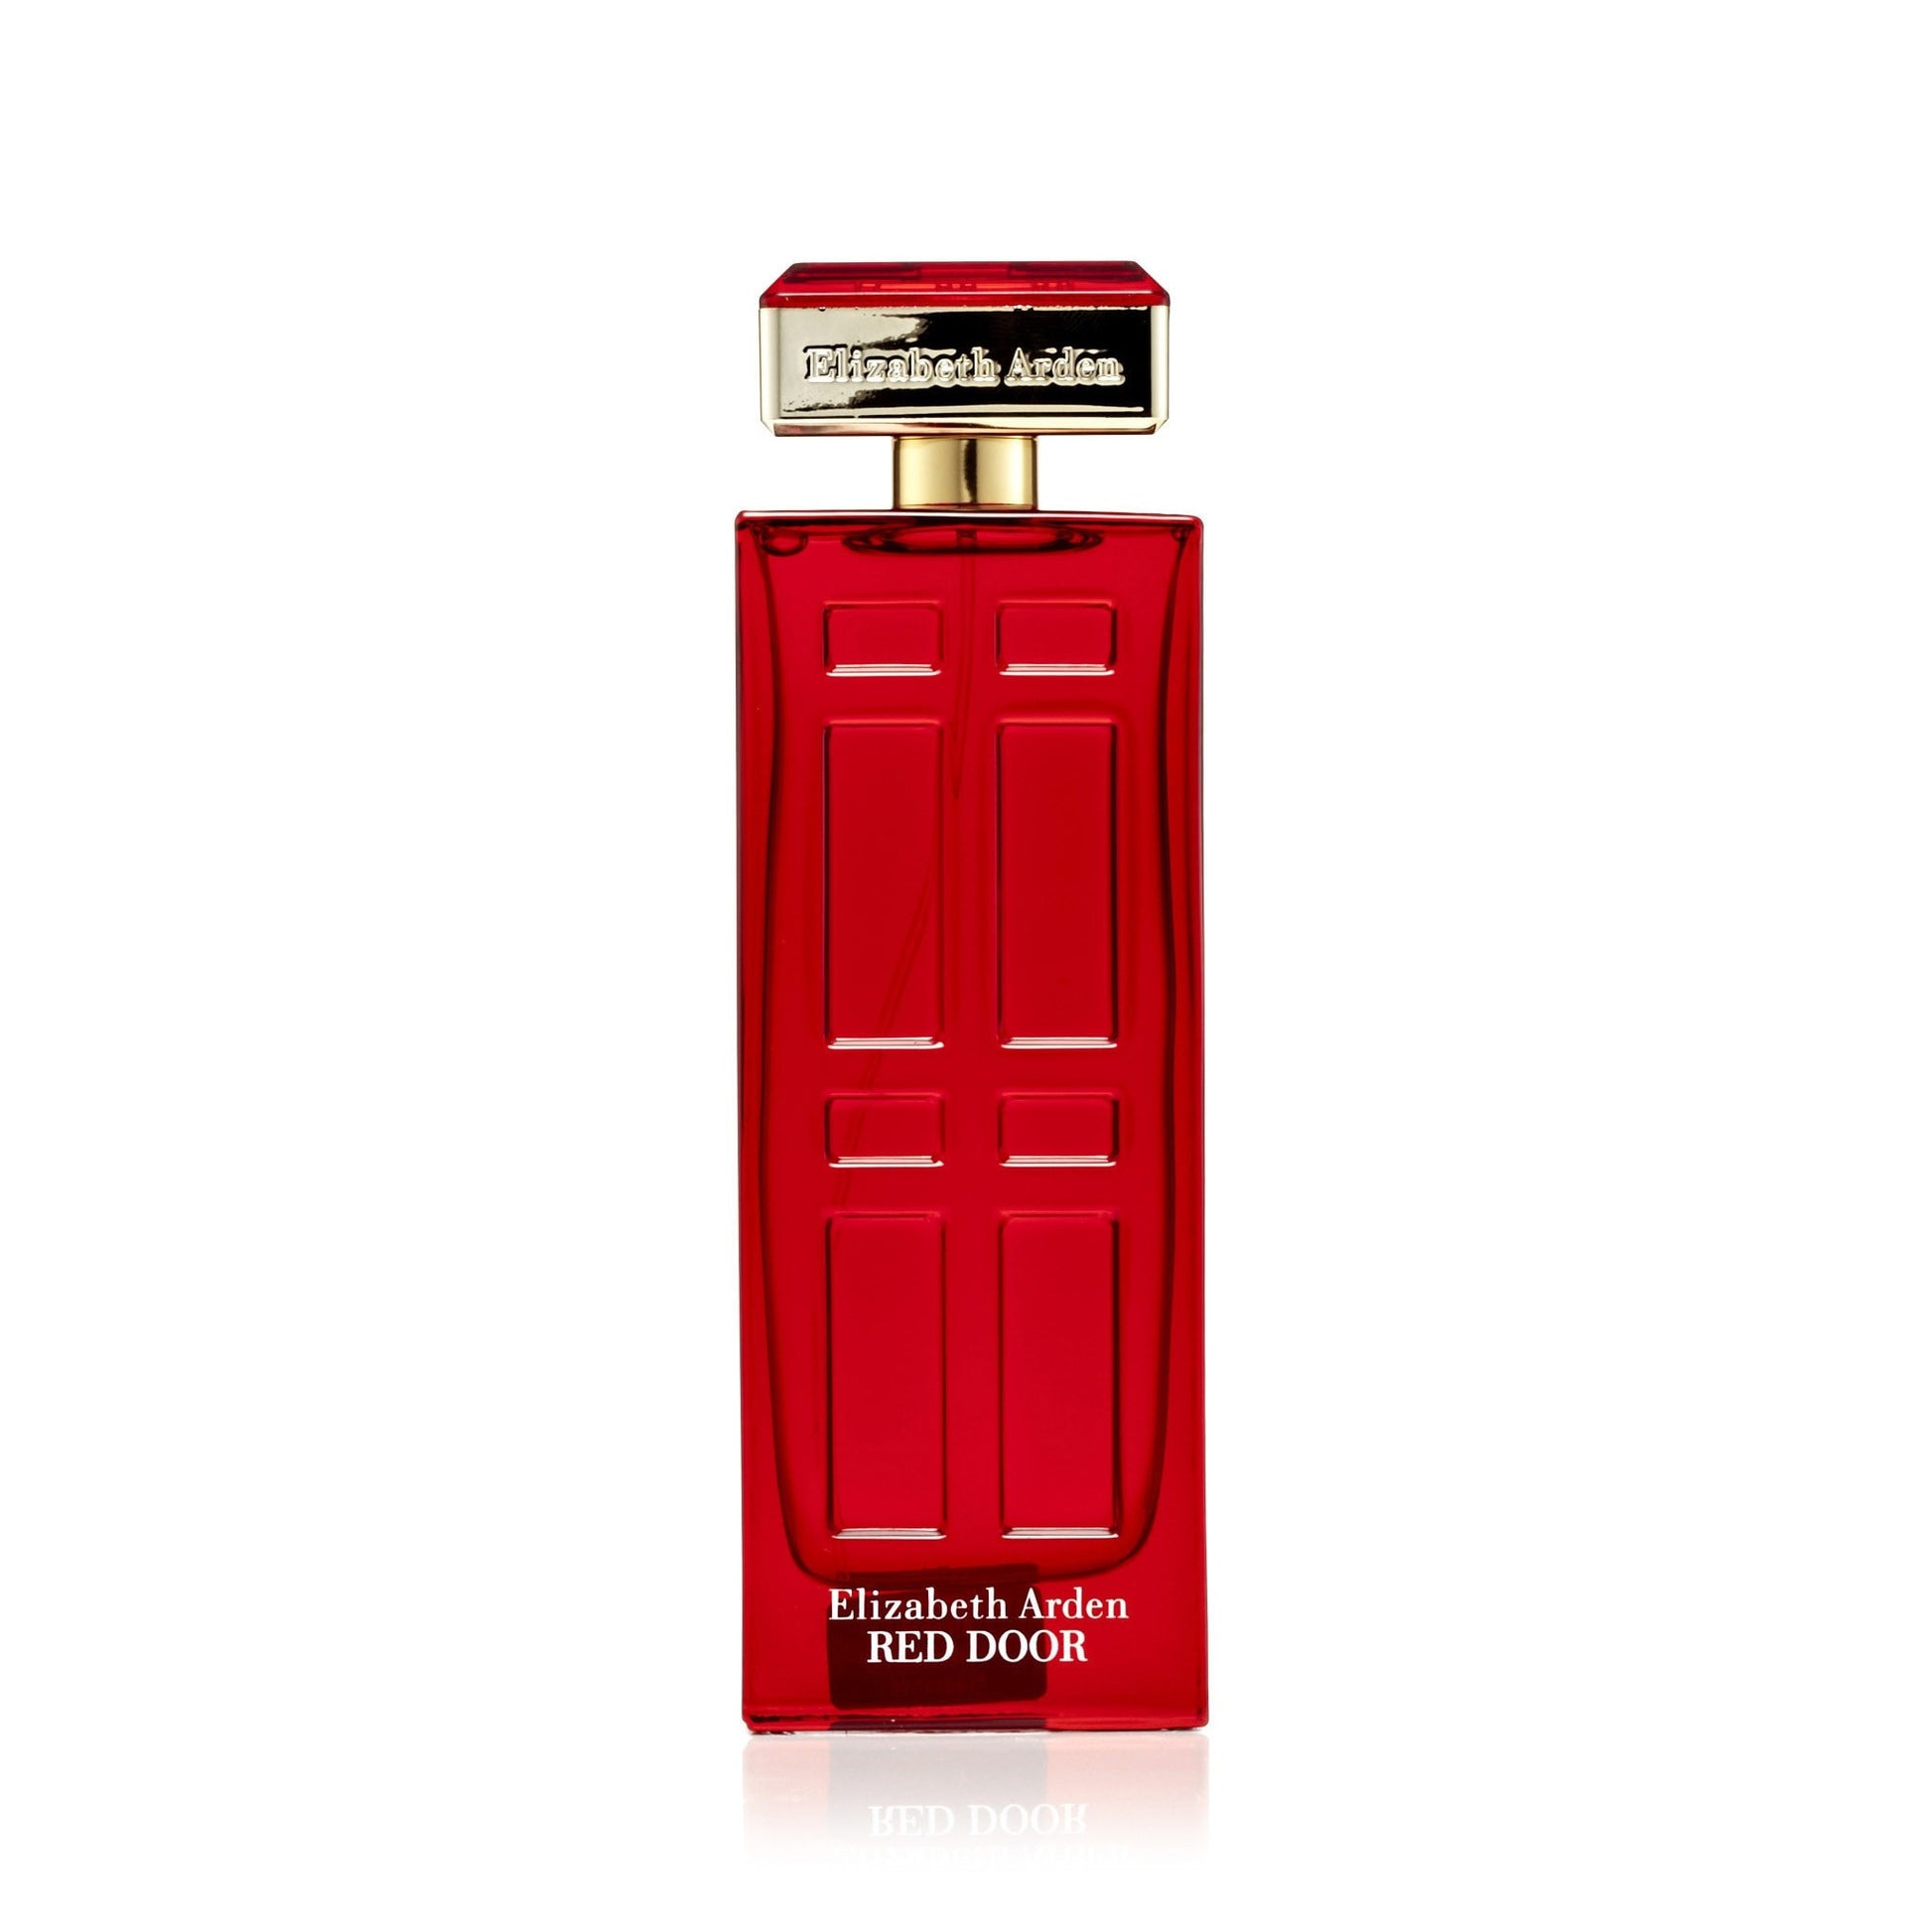 Red Door Eau de Toilette Spray for Women by Elizabeth Arden 3.4 oz. Tester Click to open in modal